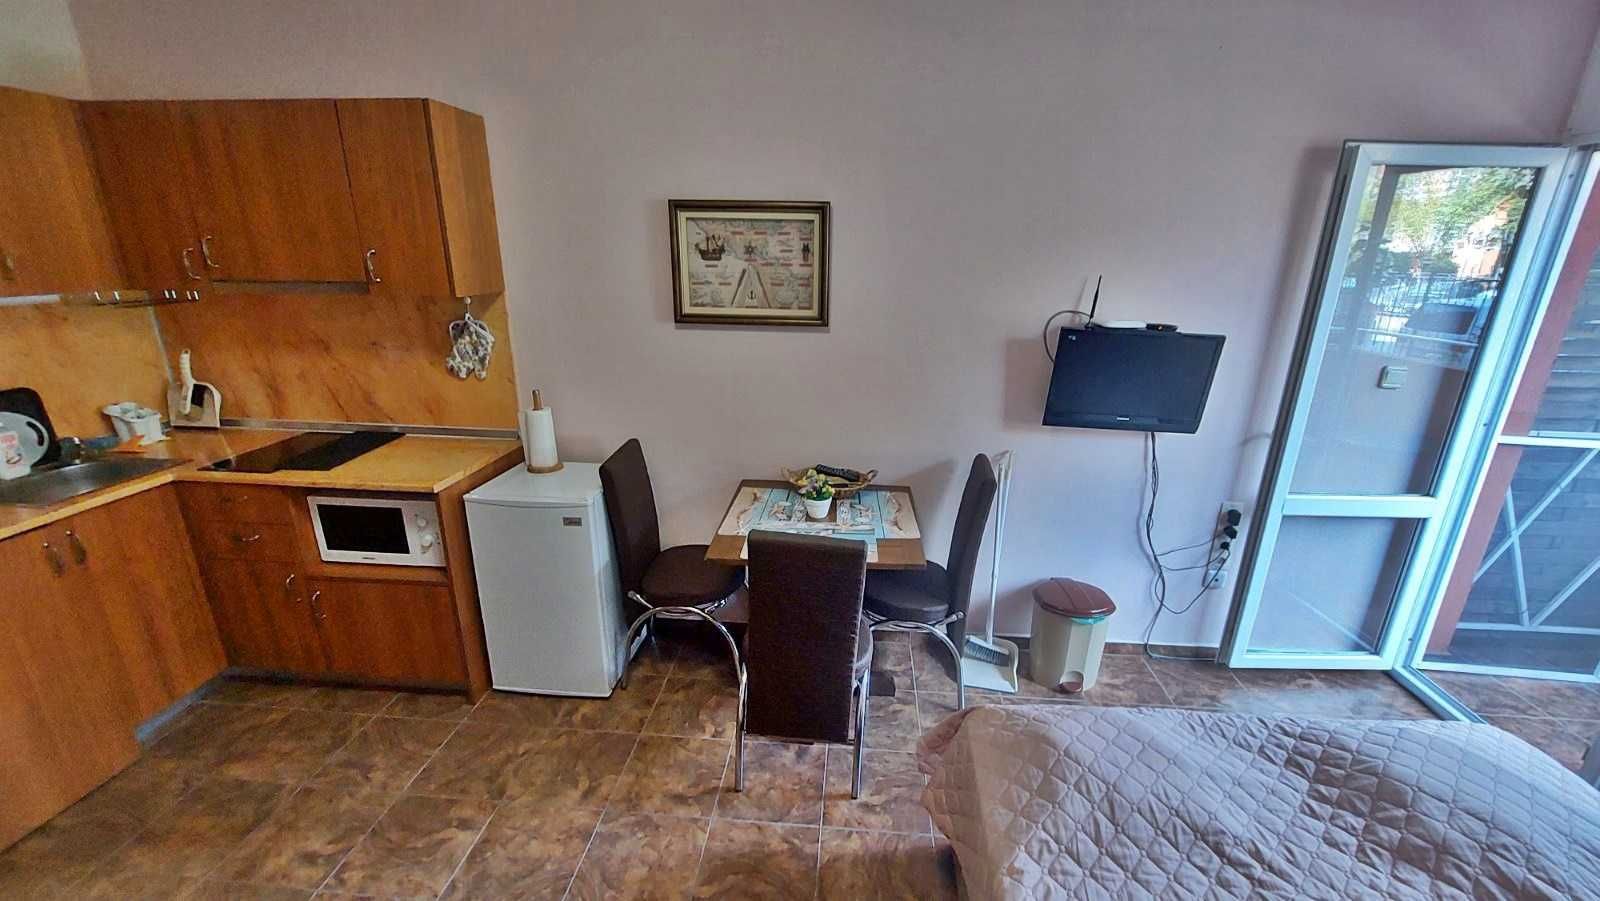 Едностаен апартамент в района на Какао Бийч